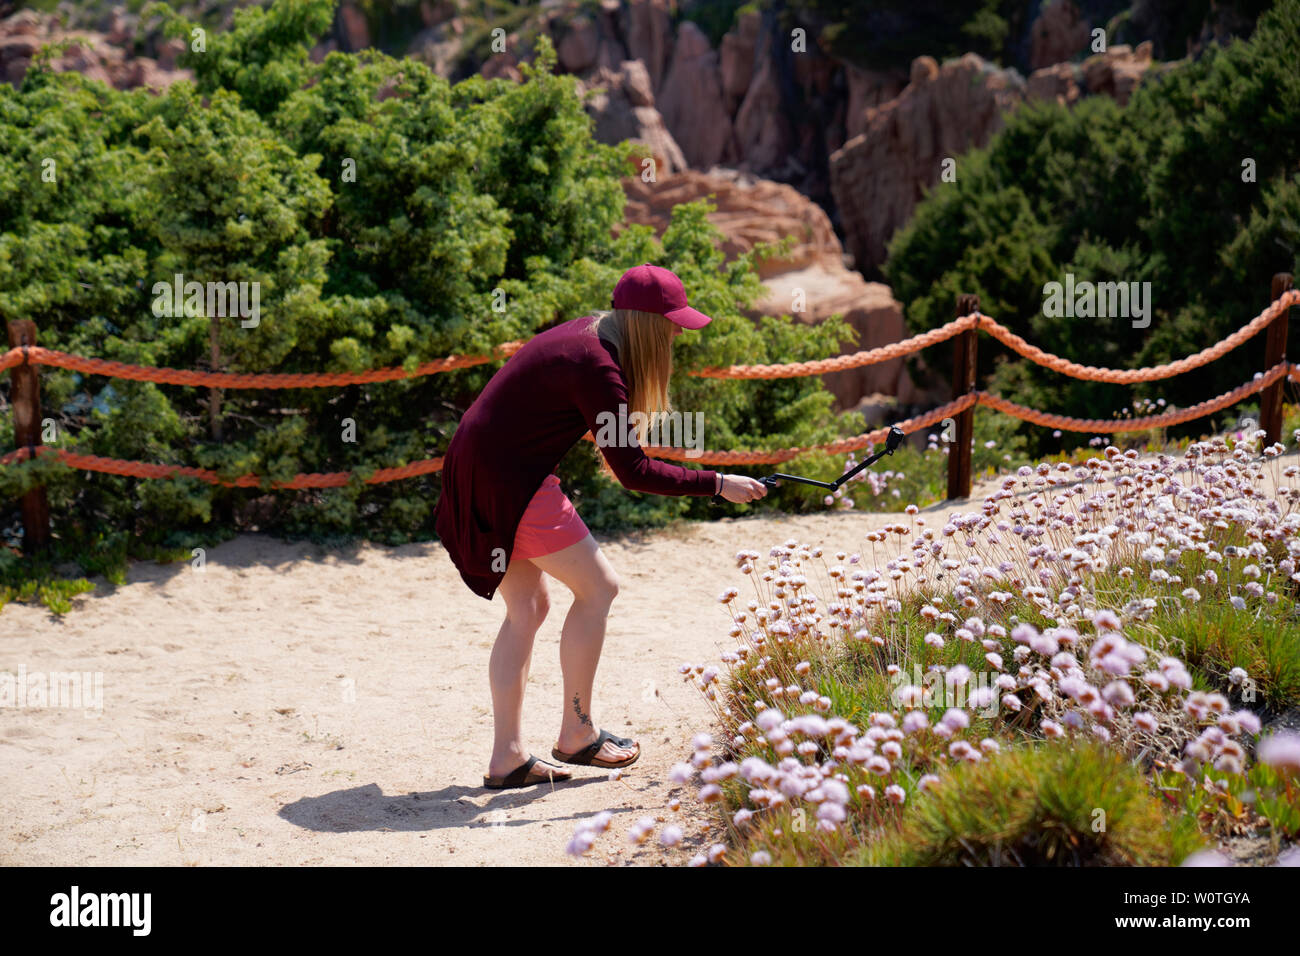 Donna fmaking un video con la gopro di fiori bautiful presso la sorgente, Costa Paradiso in Sardegna (Italia) Foto Stock